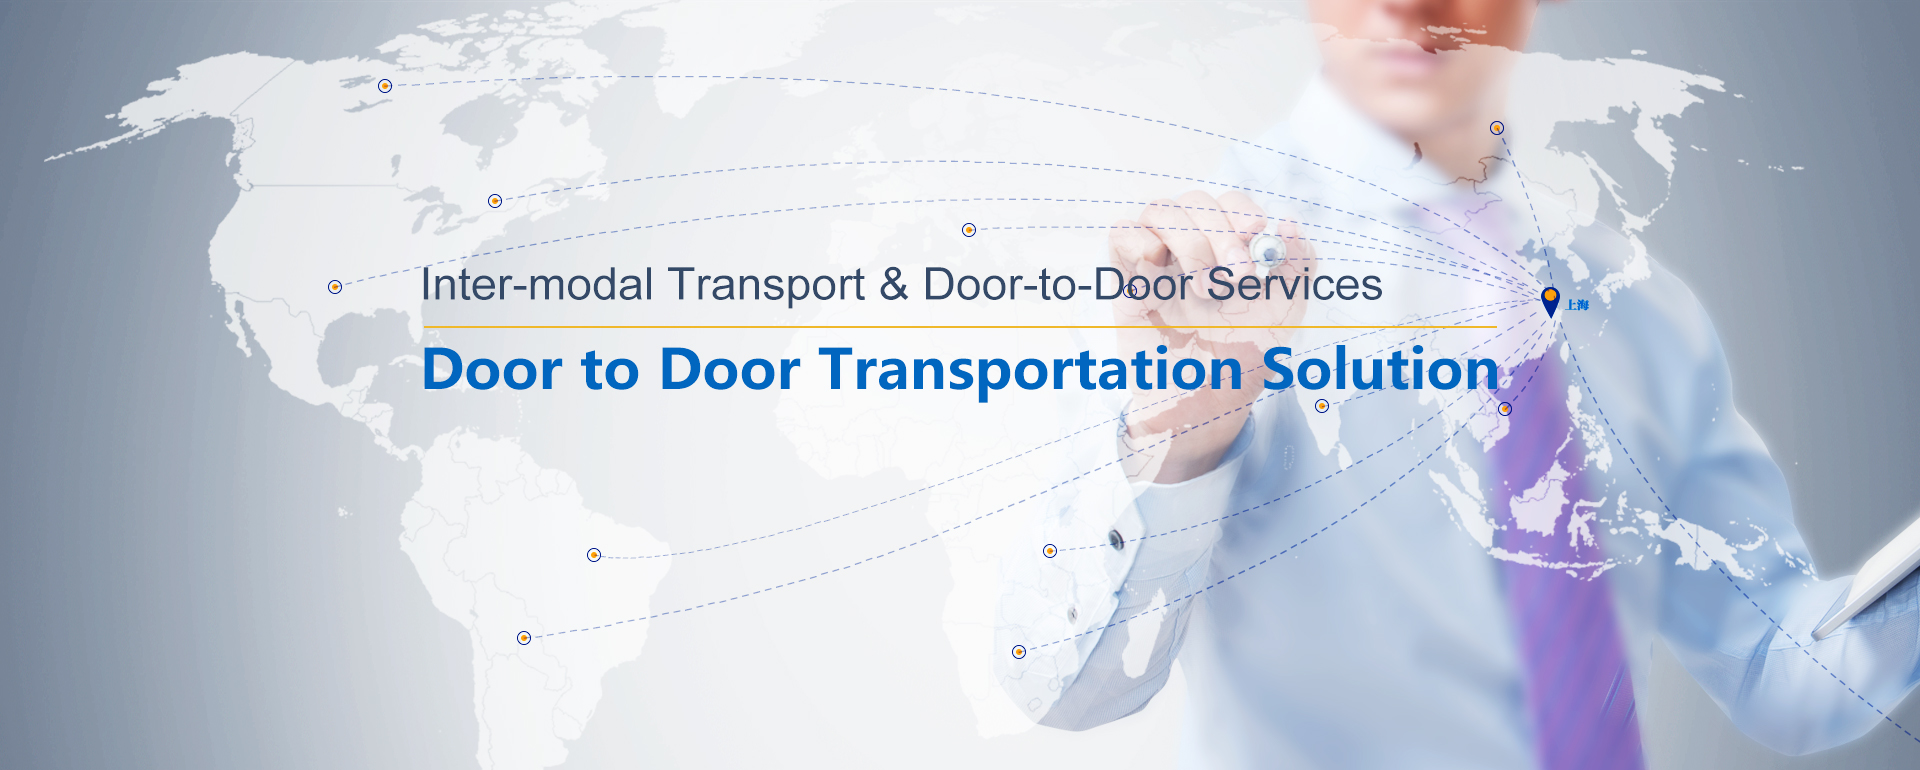 Inter-modal Transport & Door-to-Door Services